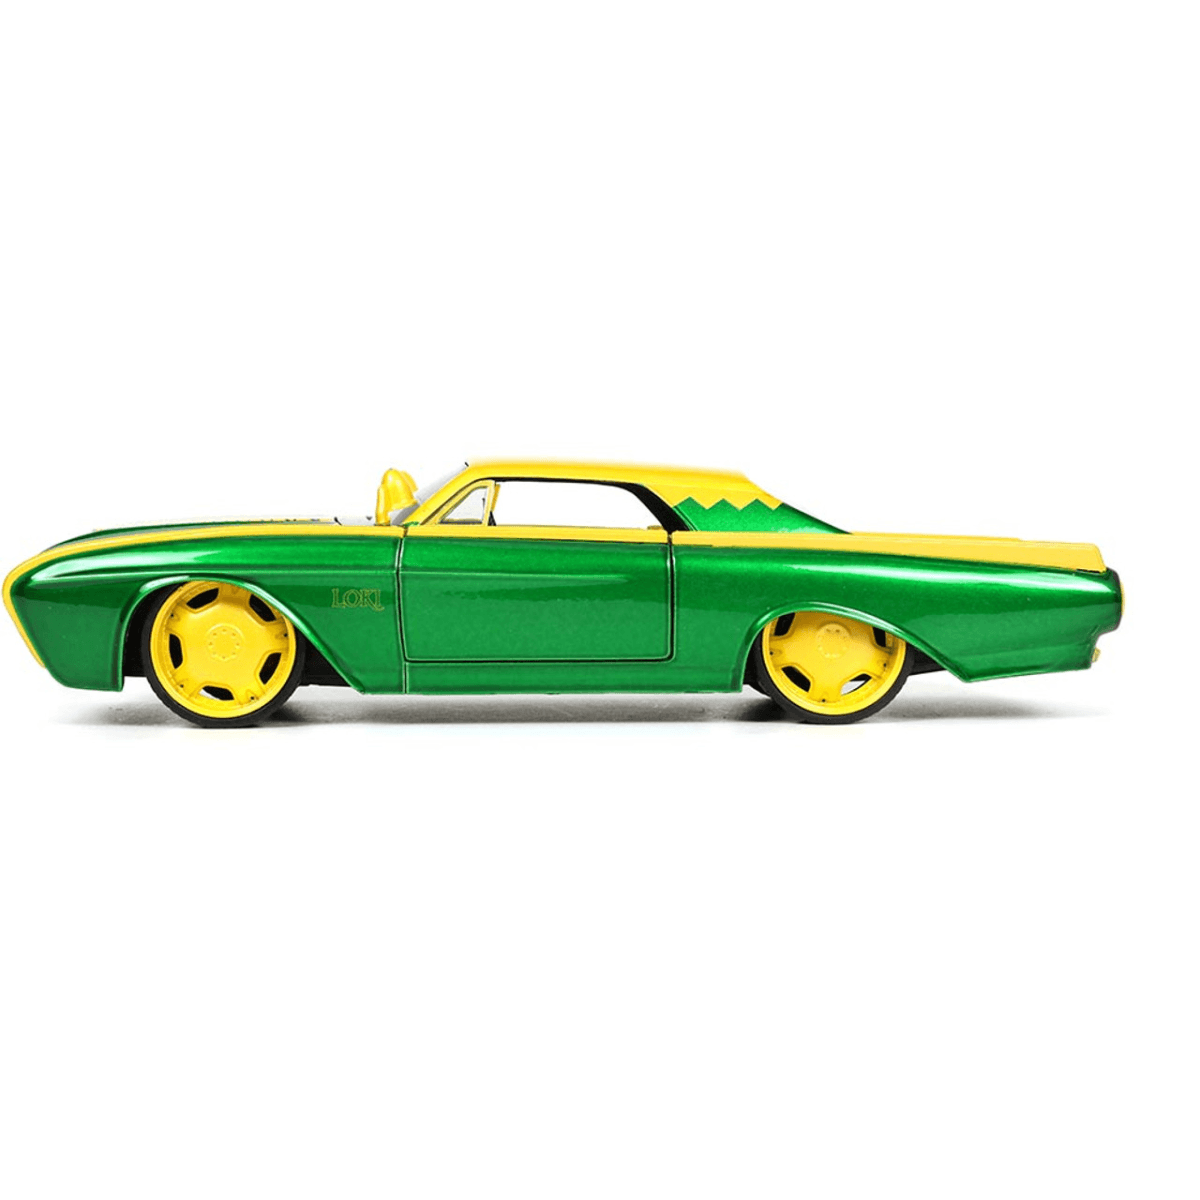 JAD33357 Marvel Comics - Loki & 1963 Ford Thunderbird 1:24 Scale - Jada Toys - Titan Pop Culture